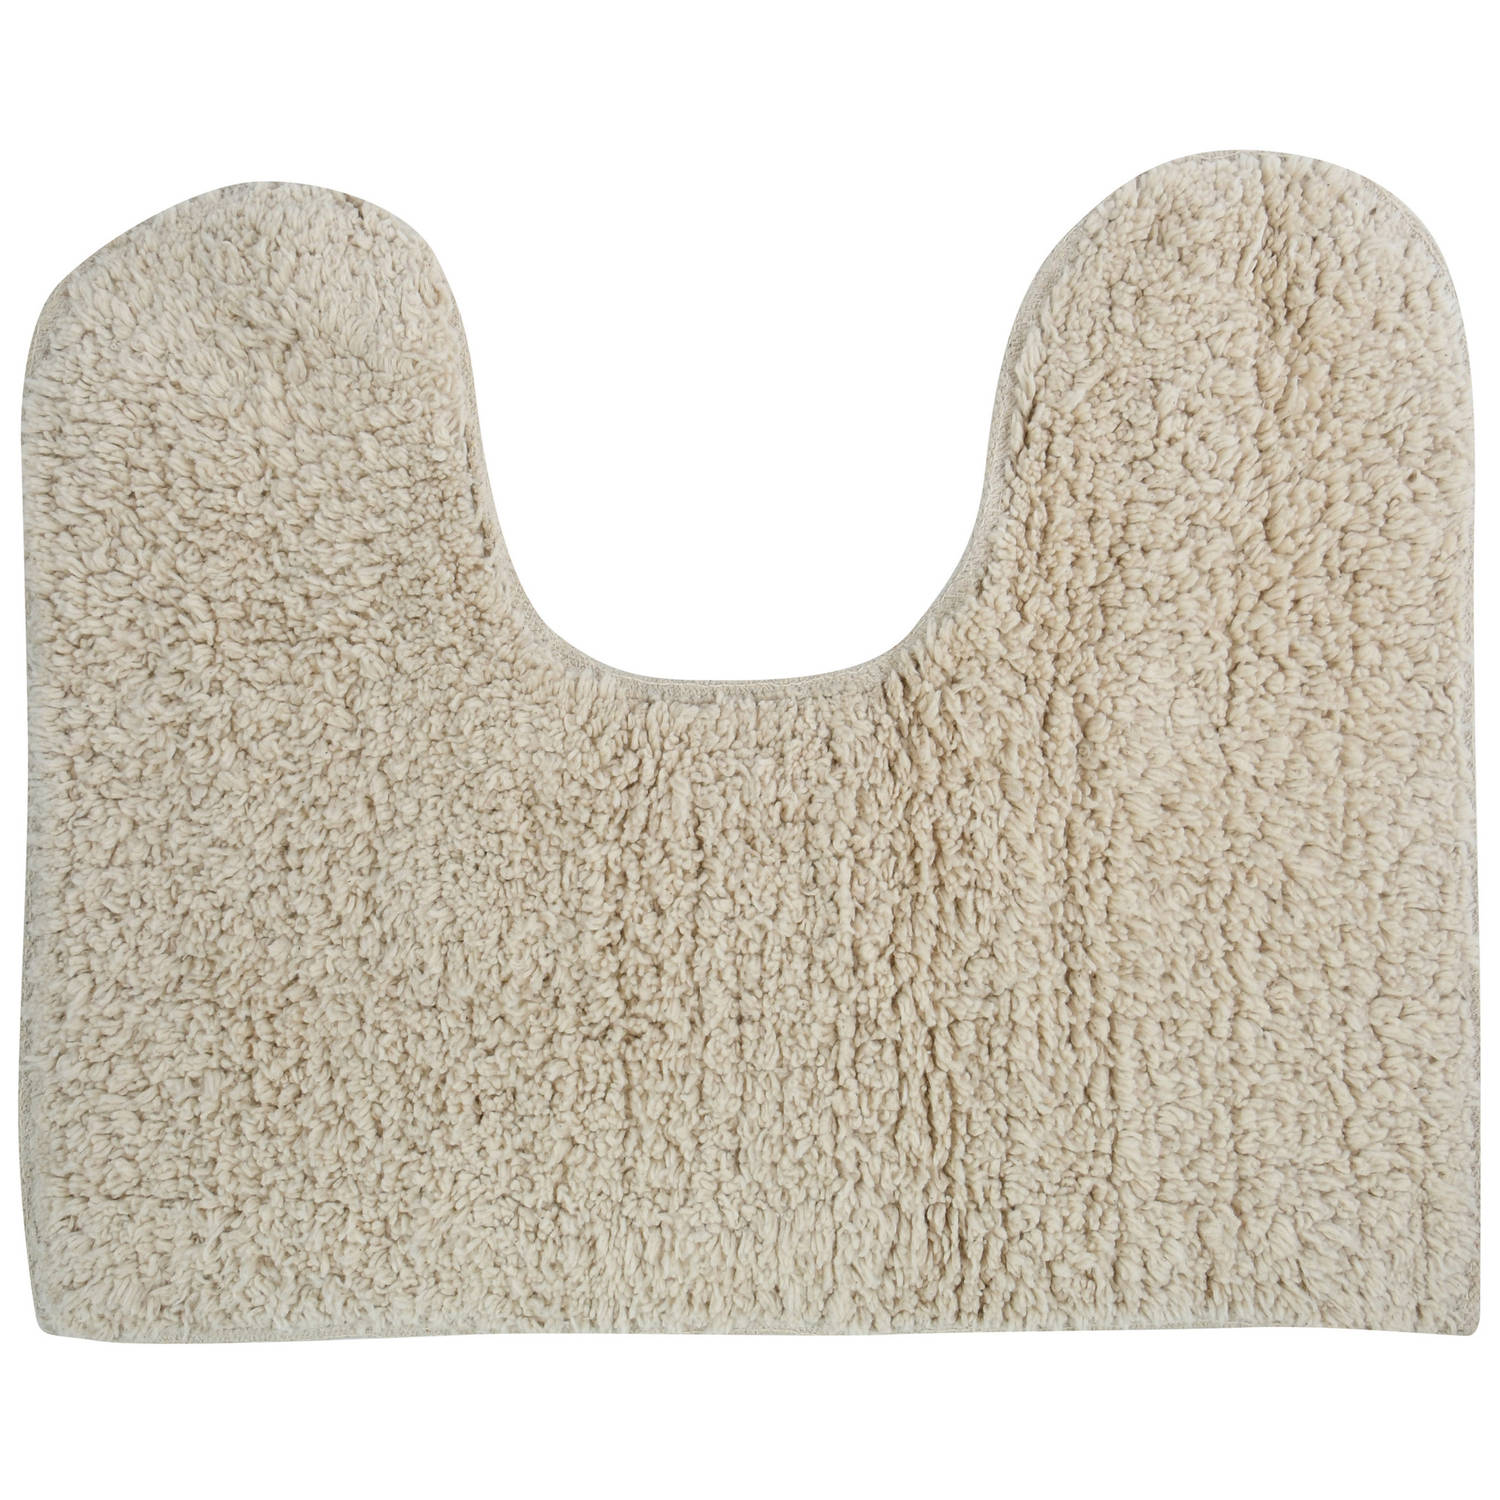 Msv Wc-badkamerkleed-badmat Voor Op De Vloer Creme Wit 45 X 35 Cm